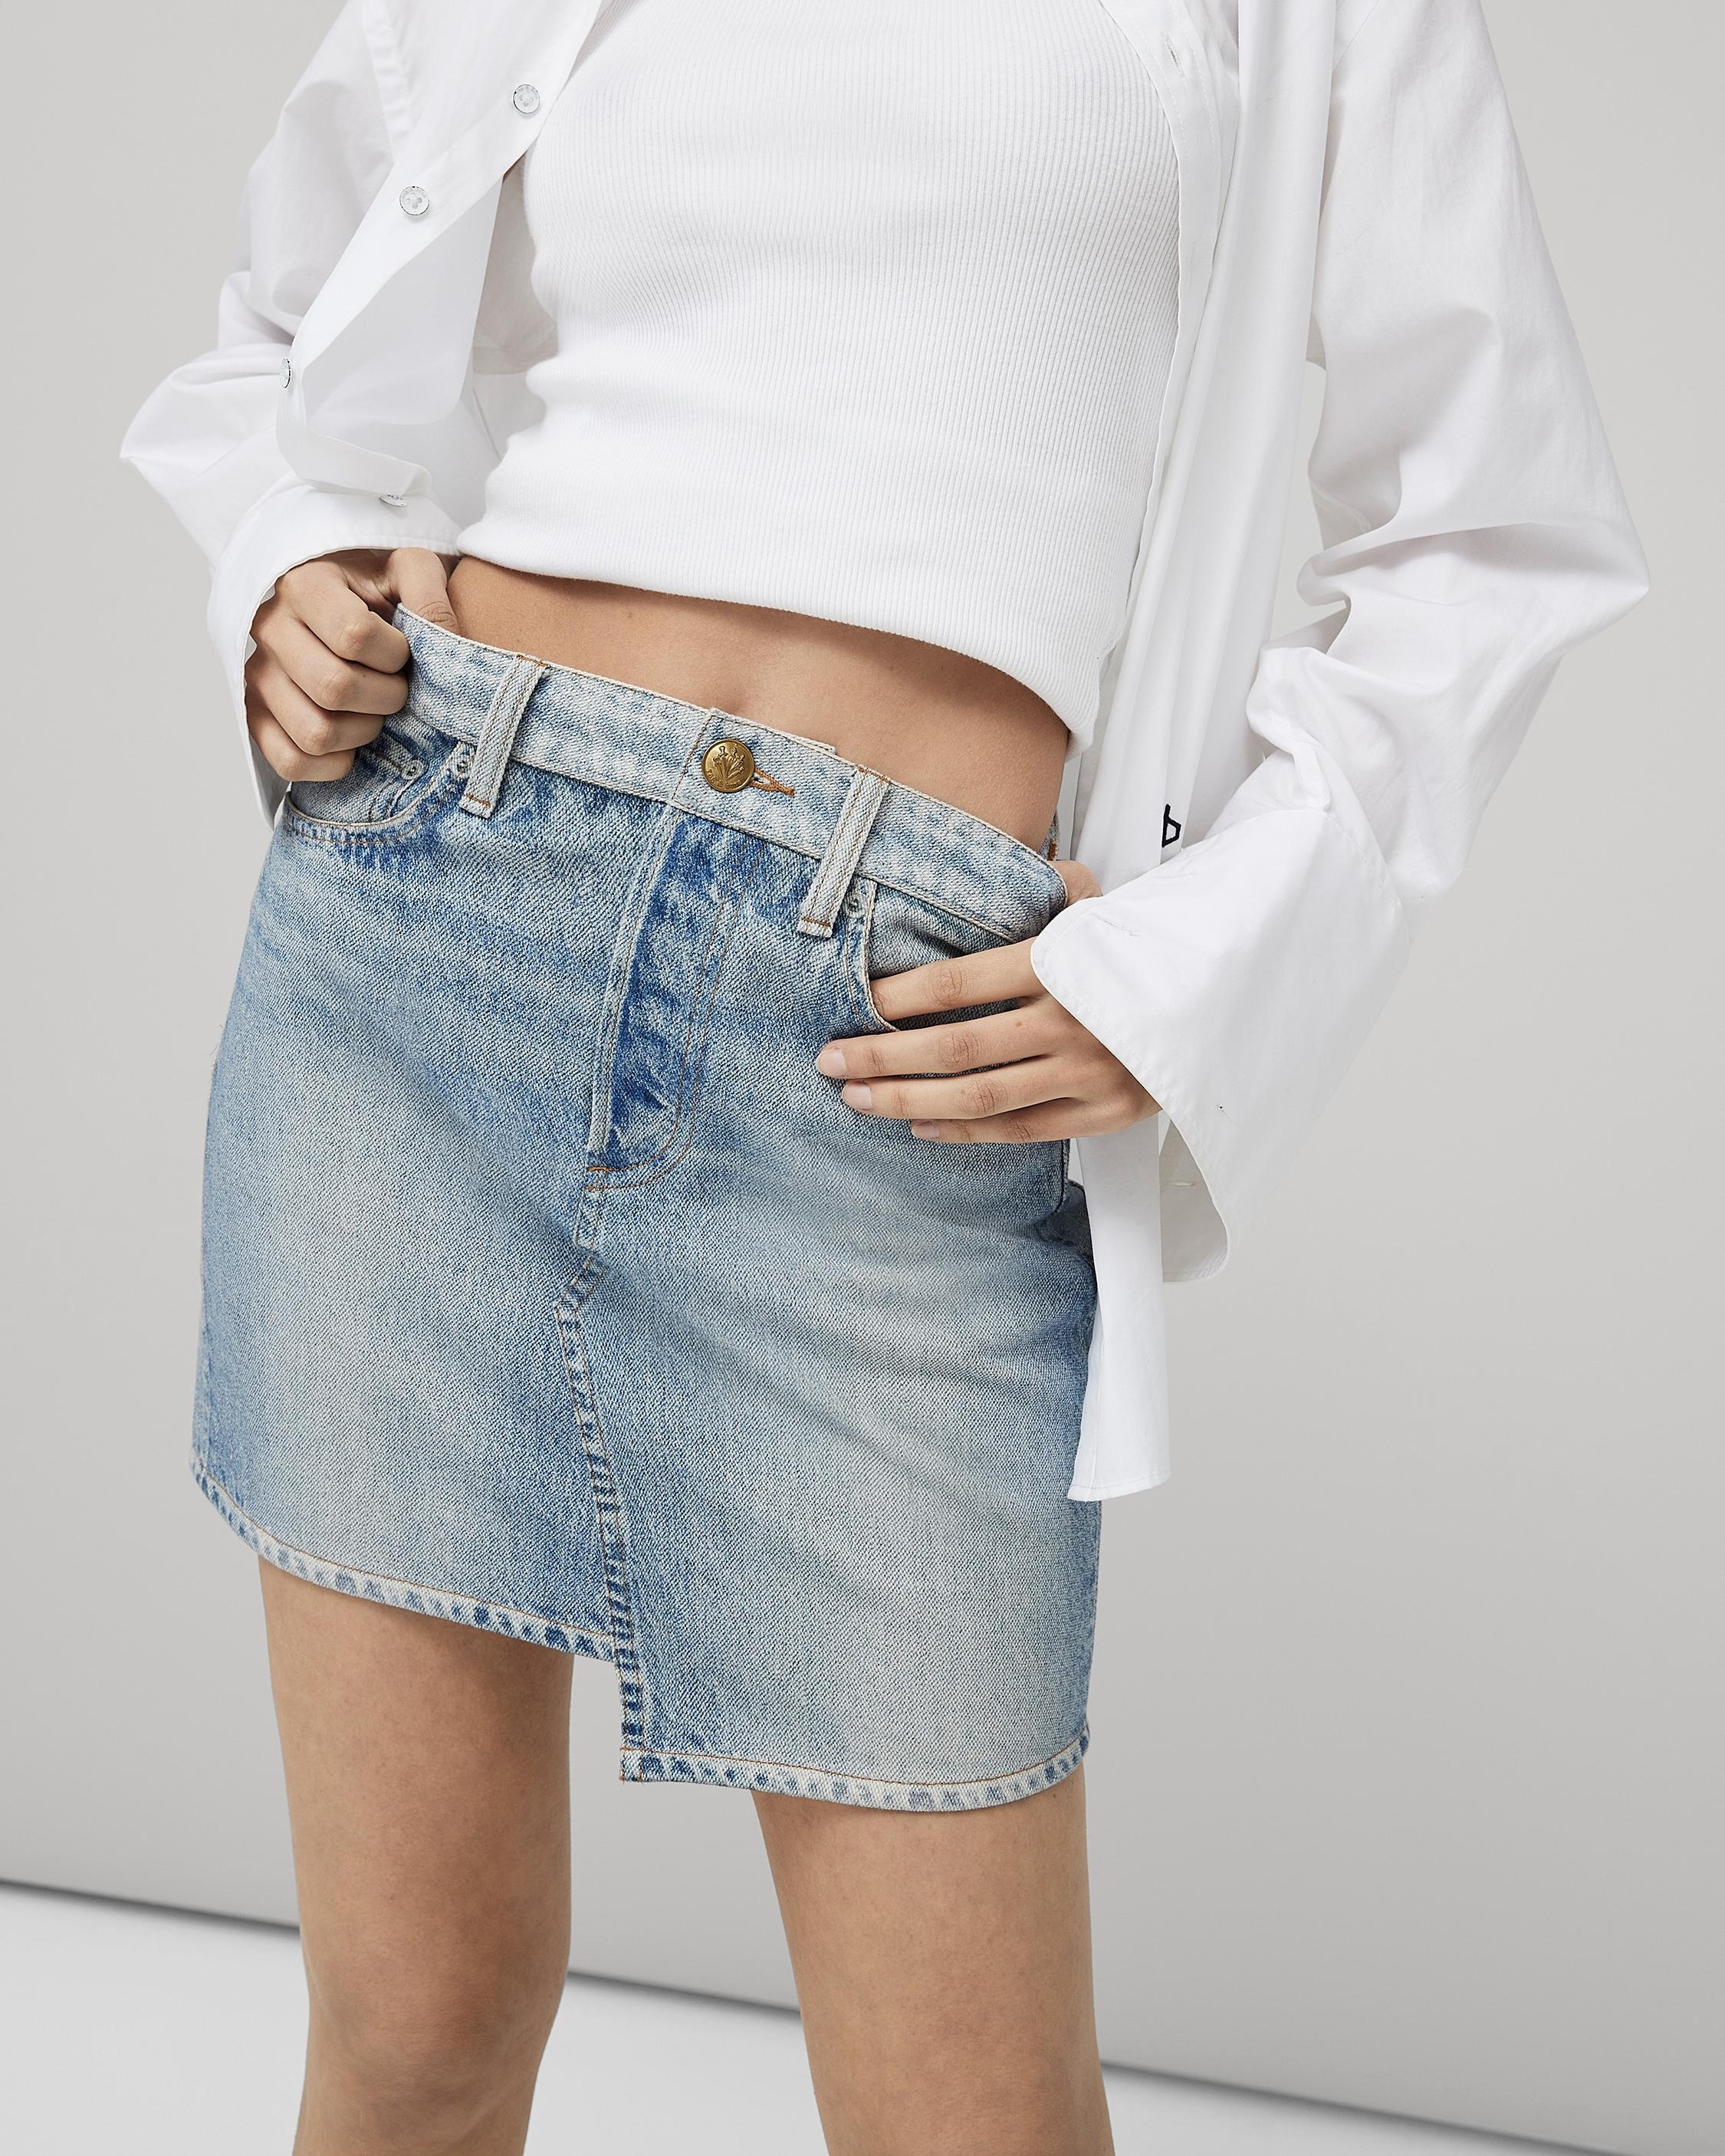 Canvas Miramar Mini Skirt
Trompe L'oeil Cotton Skirt - 2